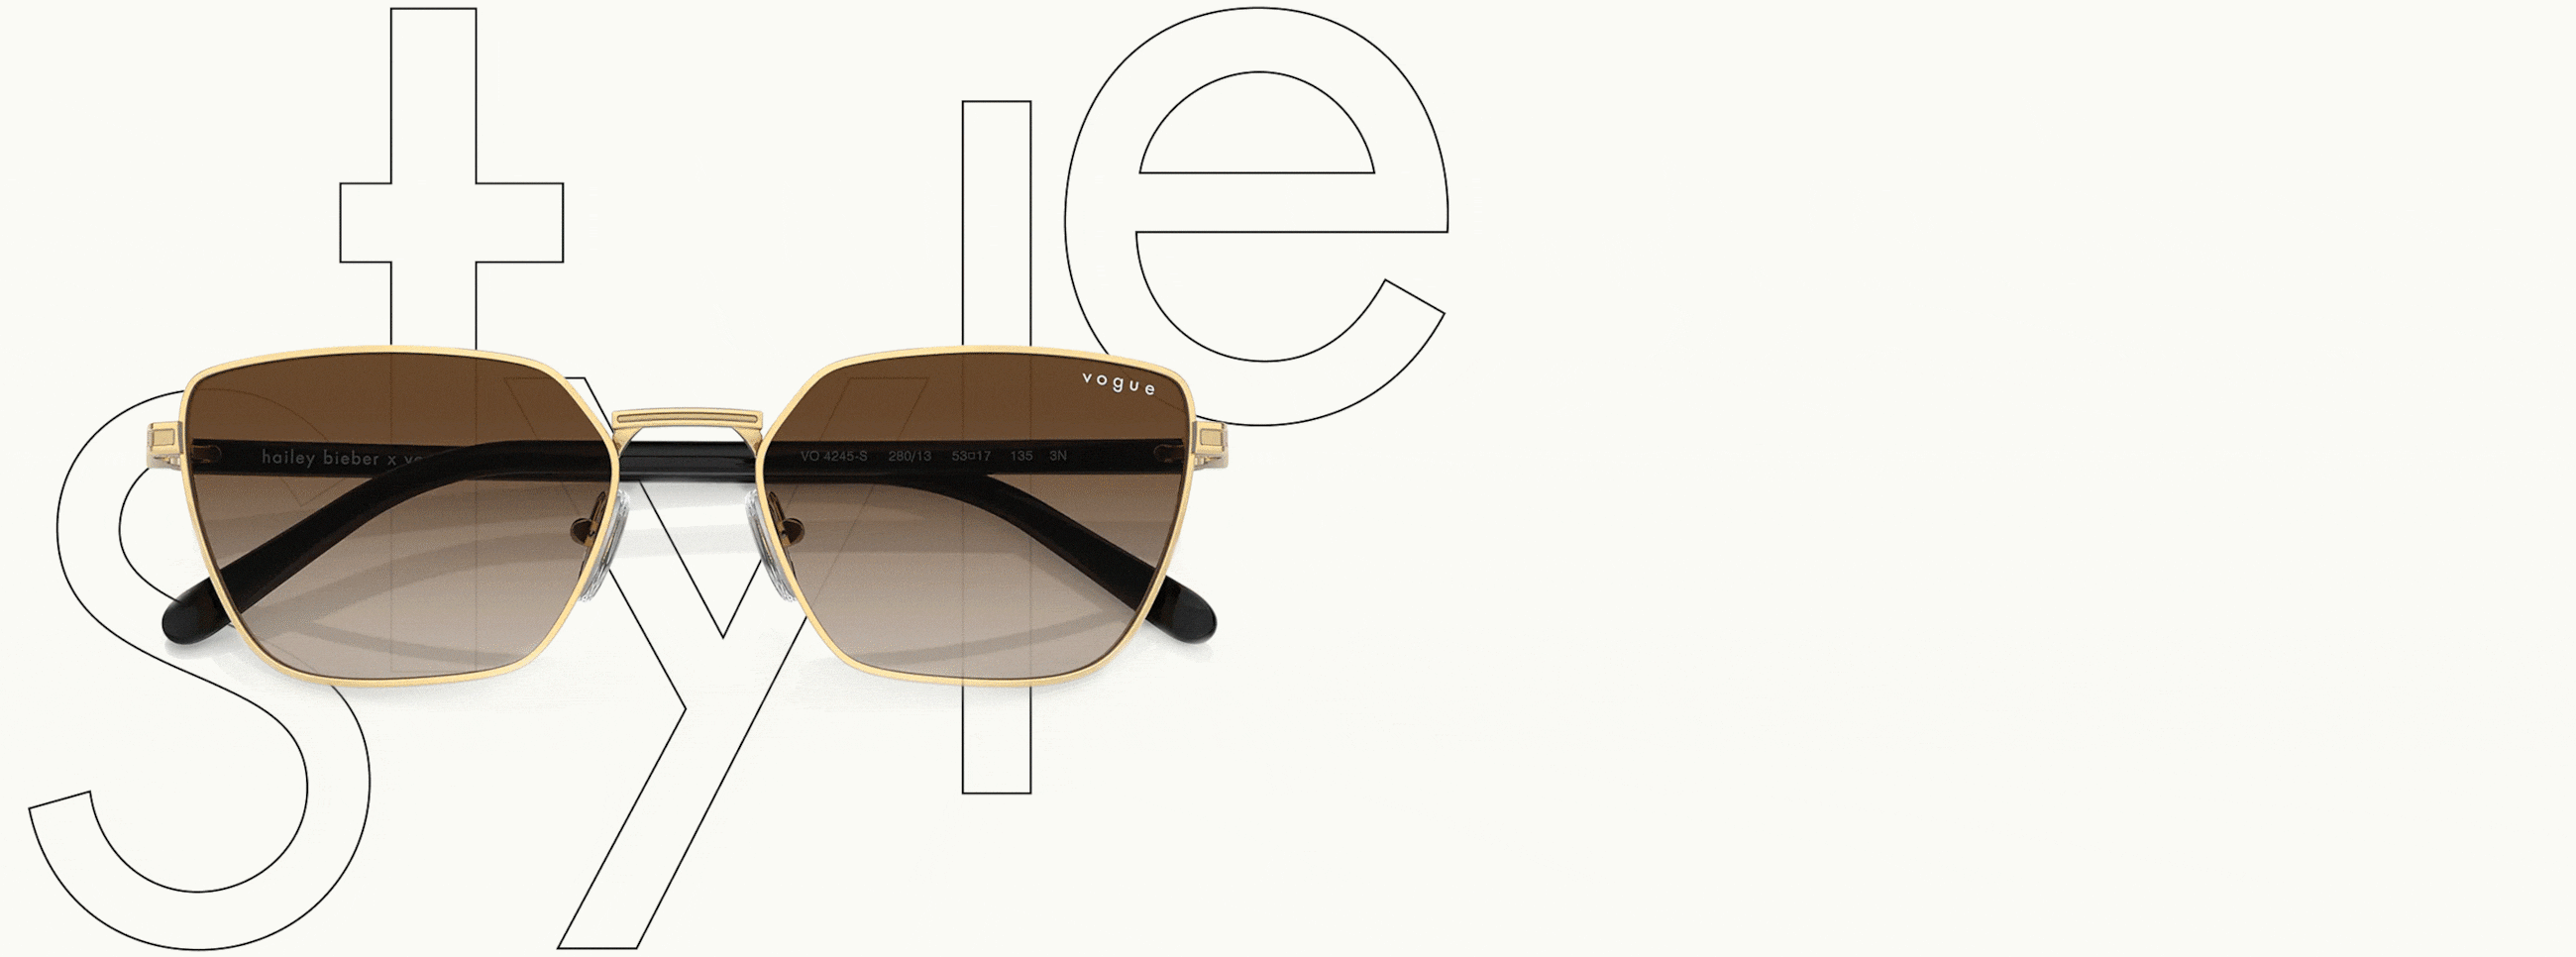 Web oficial de Vogue Gafas de sol y gafas vista